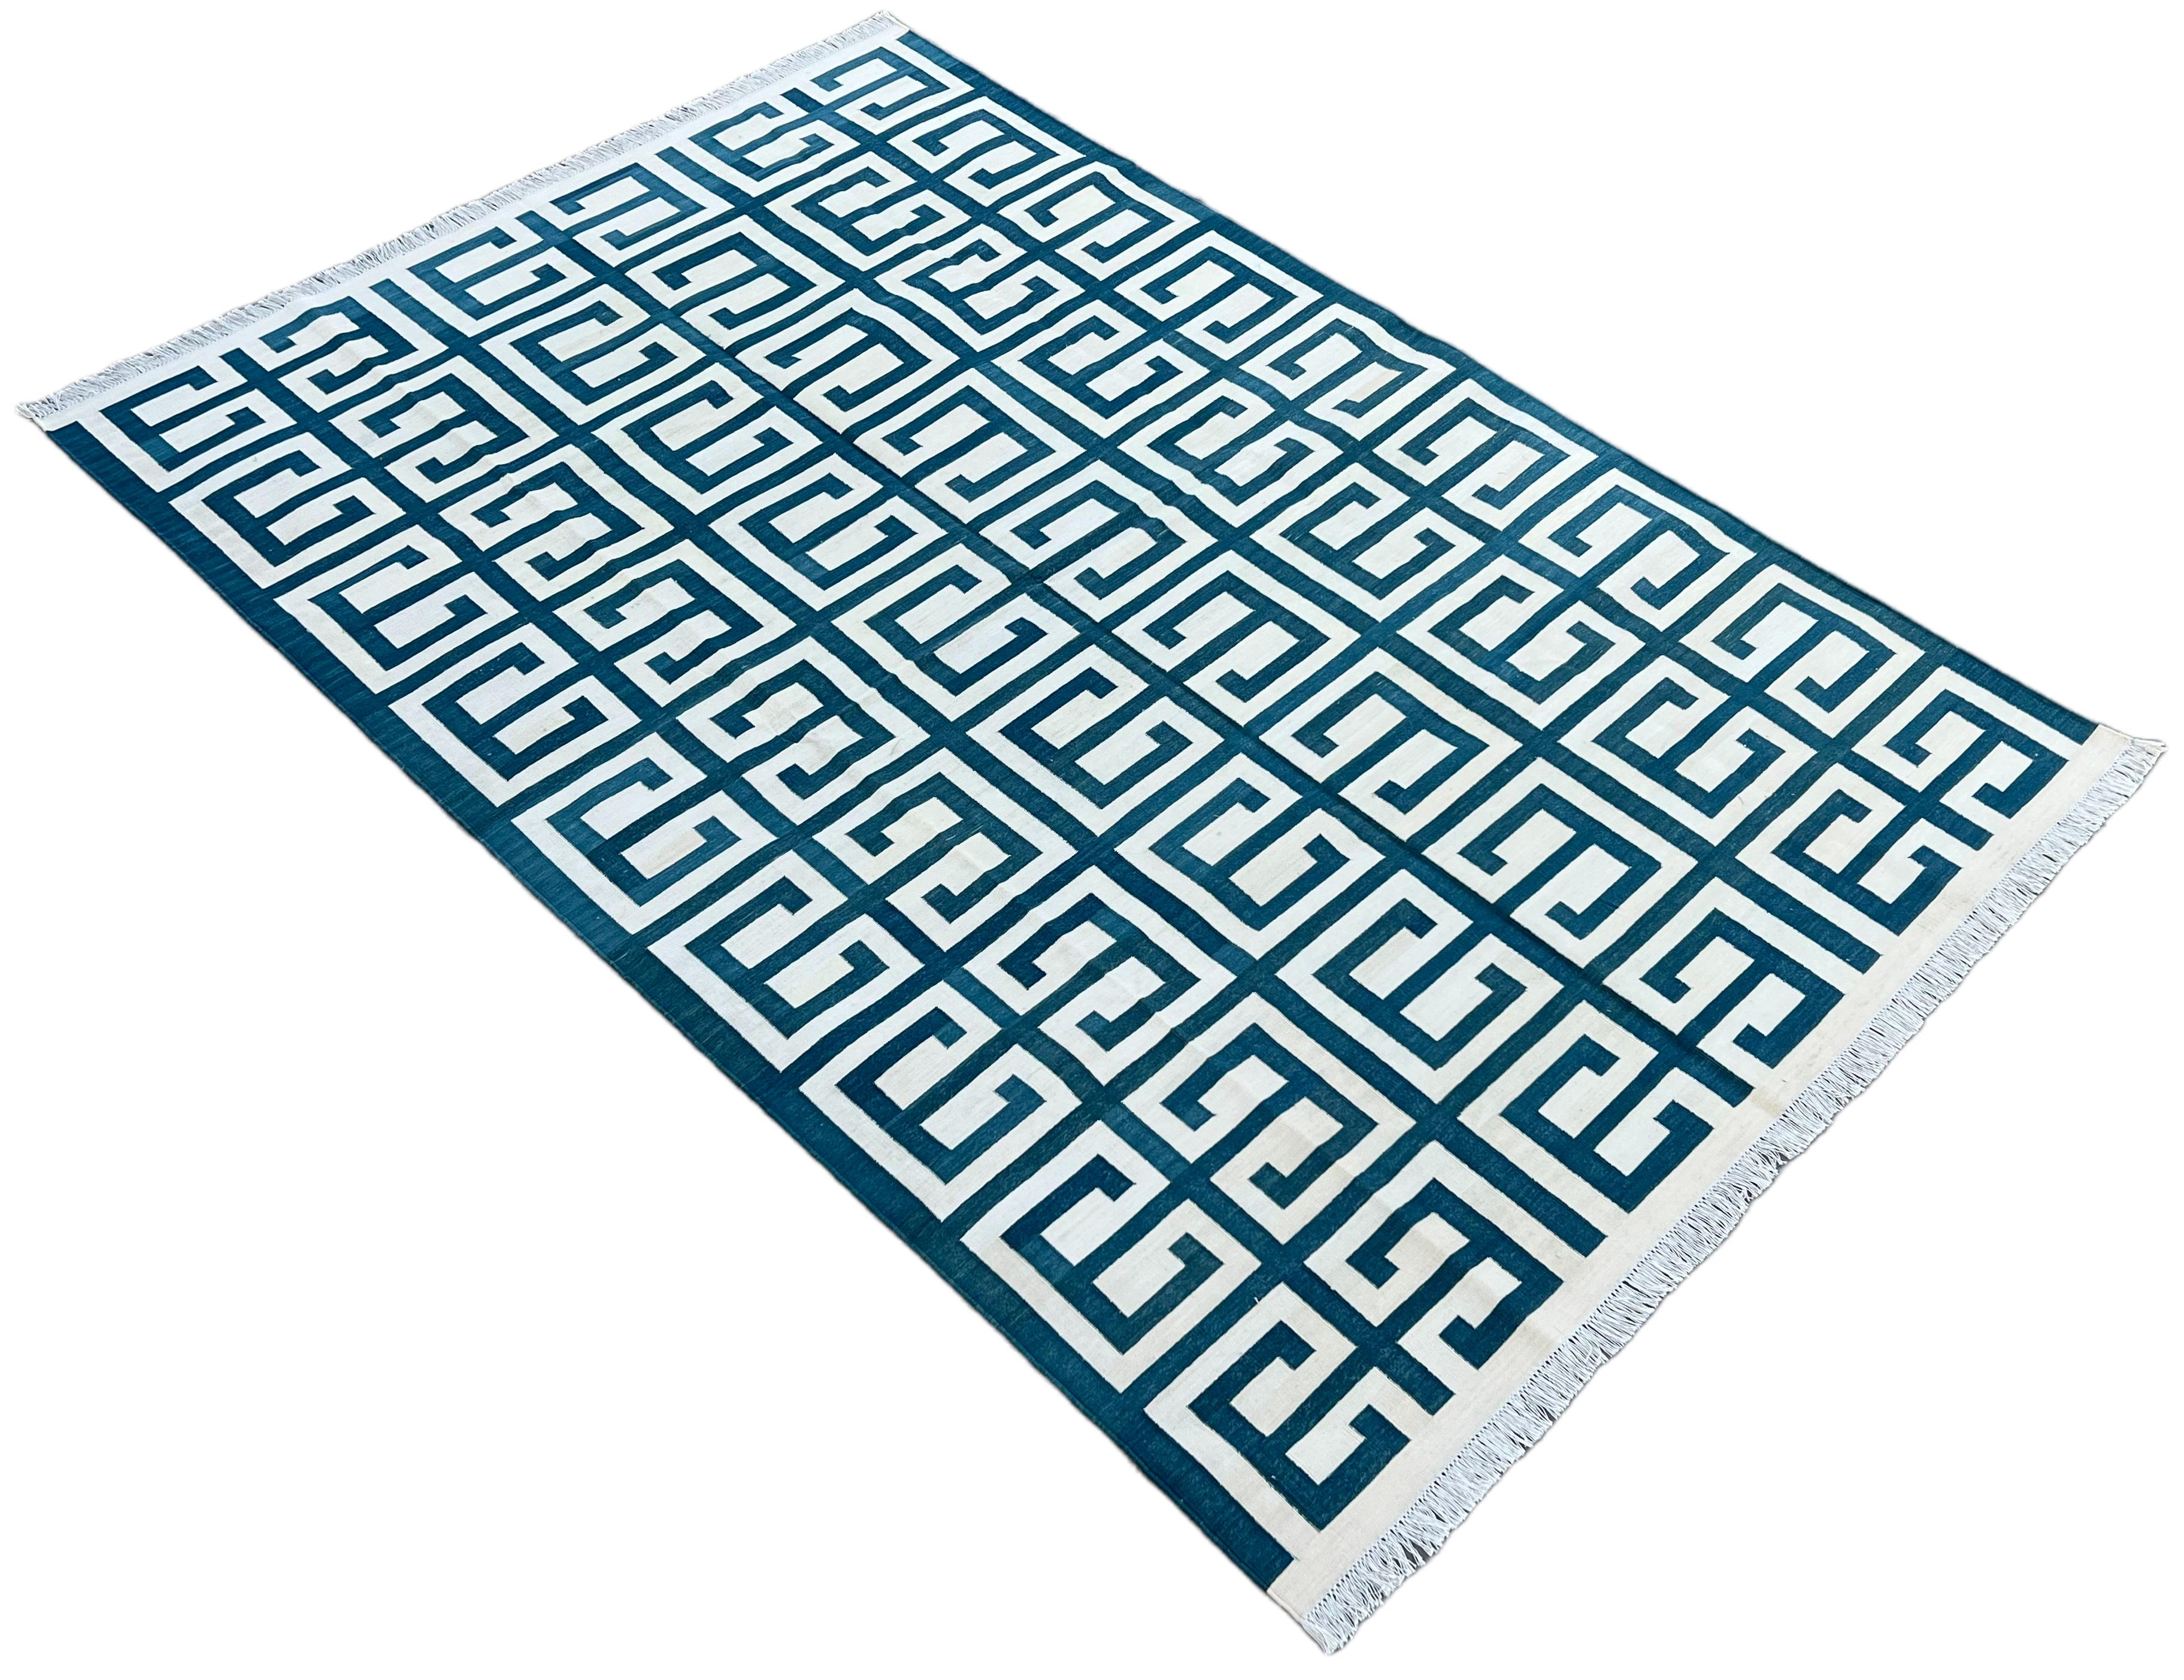 Tapis indien en coton teint végétal réversible bleu et blanc à motifs géométriques - 6'x9'
Ces dhurries spéciales à tissage plat sont tissées à la main avec du fil 100 % coton 15 plis. En raison des techniques de fabrication spéciales utilisées pour